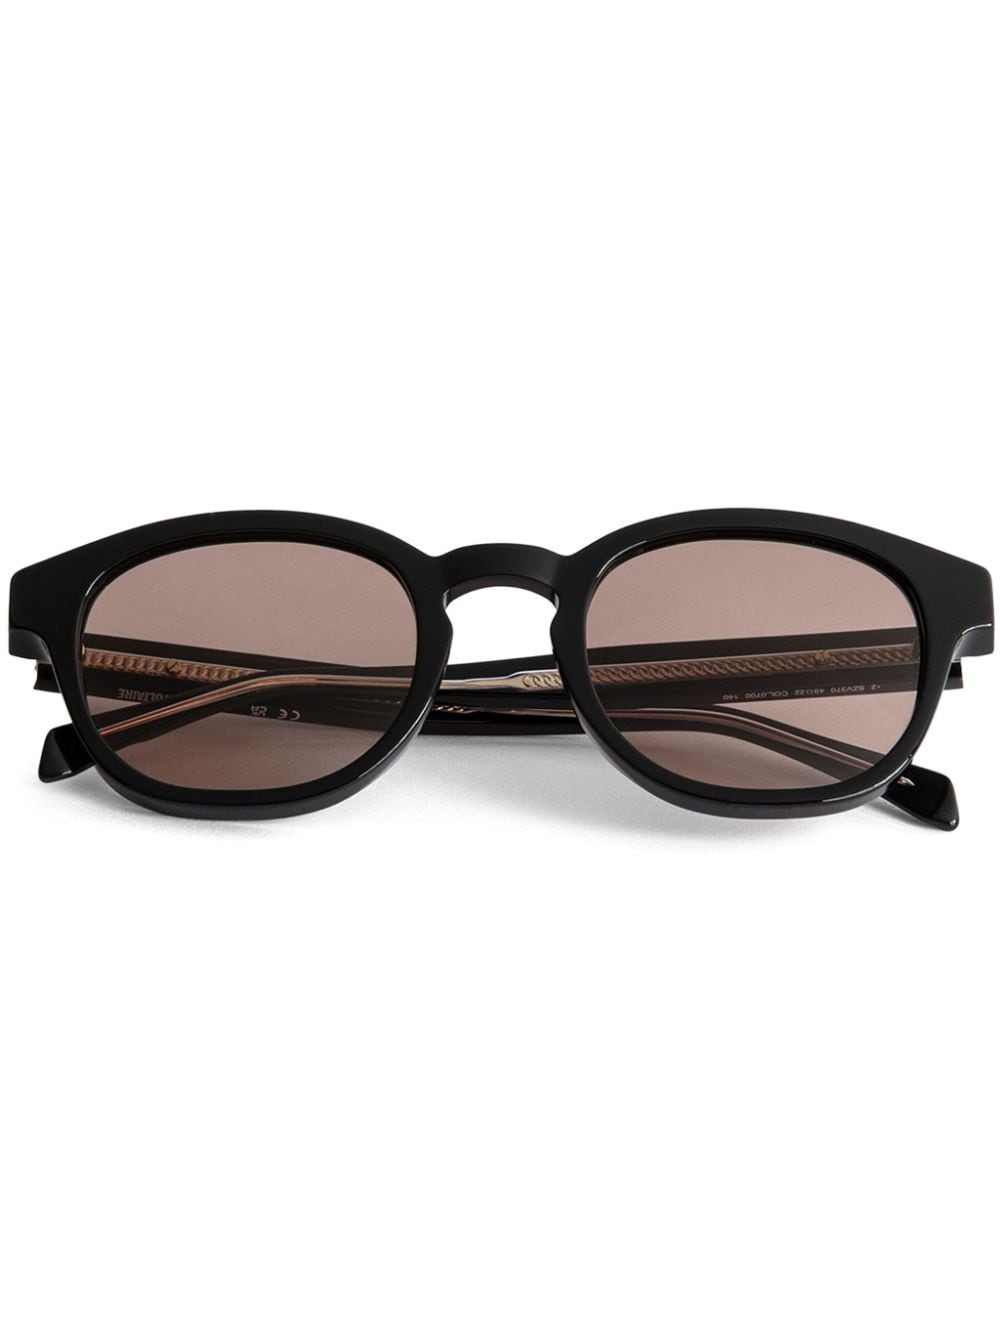 Zadig&Voltaire ZV23H6 round-frame sunglasses - Brown von Zadig&Voltaire